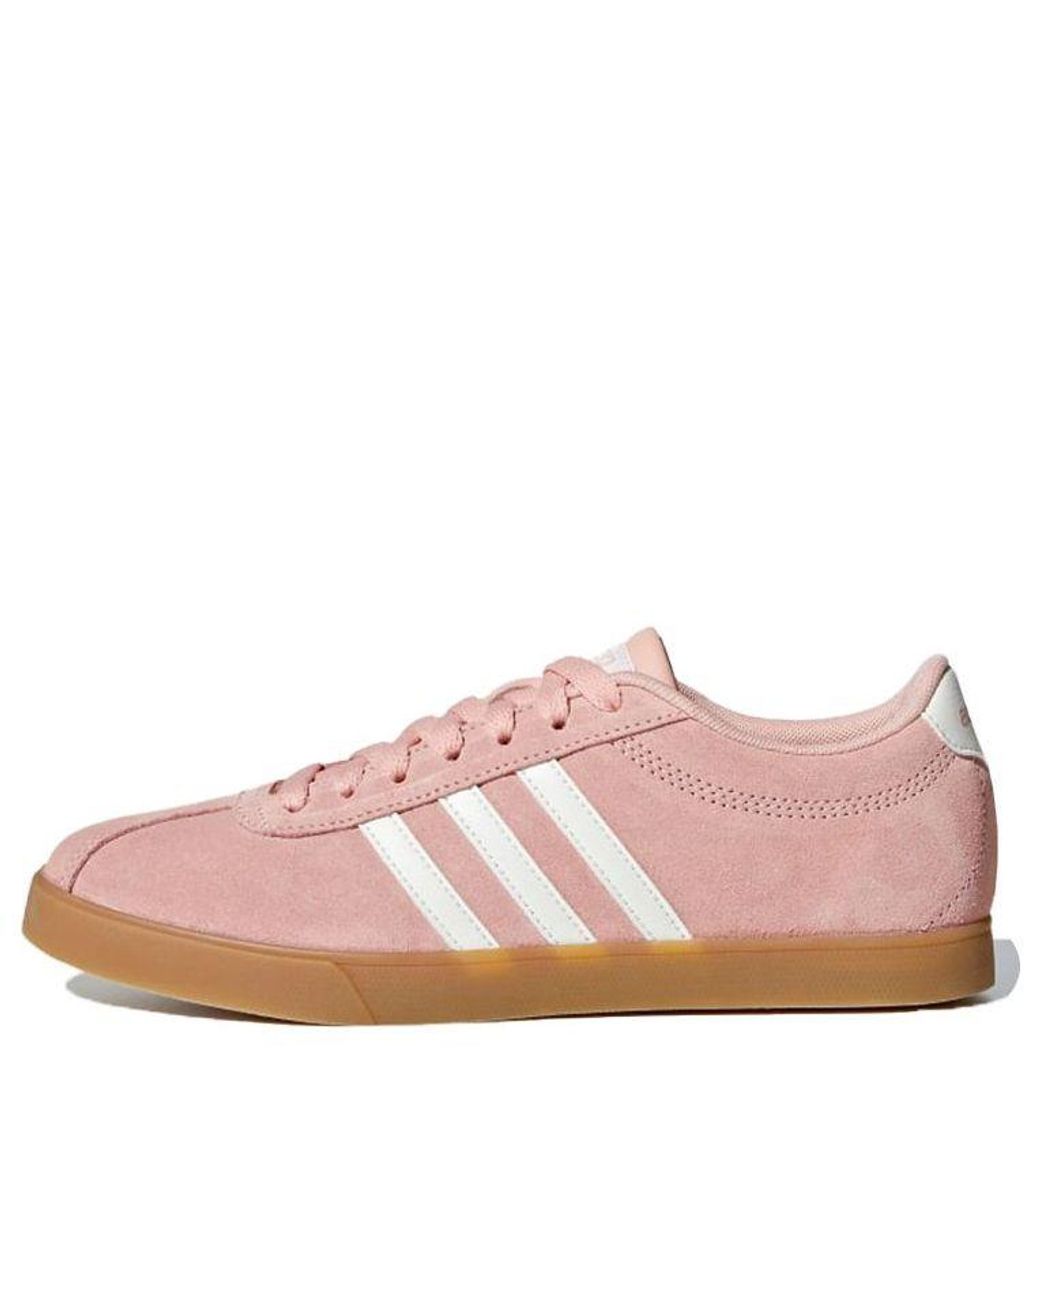 Adidas Neo Courtset Pink | Lyst